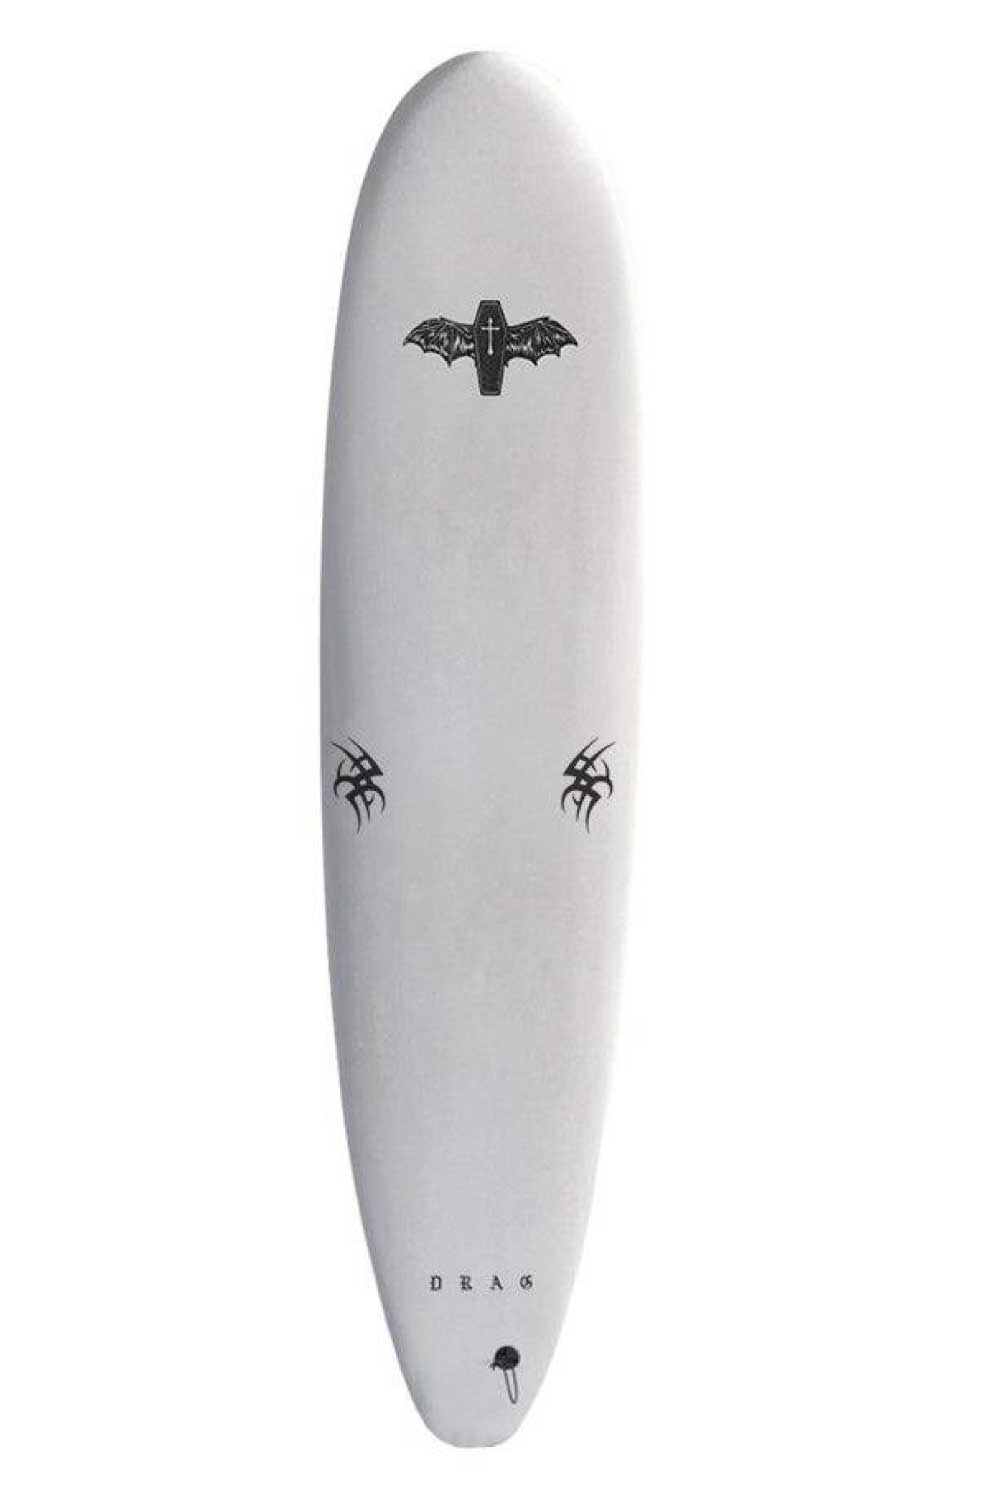 Drag Board Co Coffin 8’0 Single Fin Softboard white